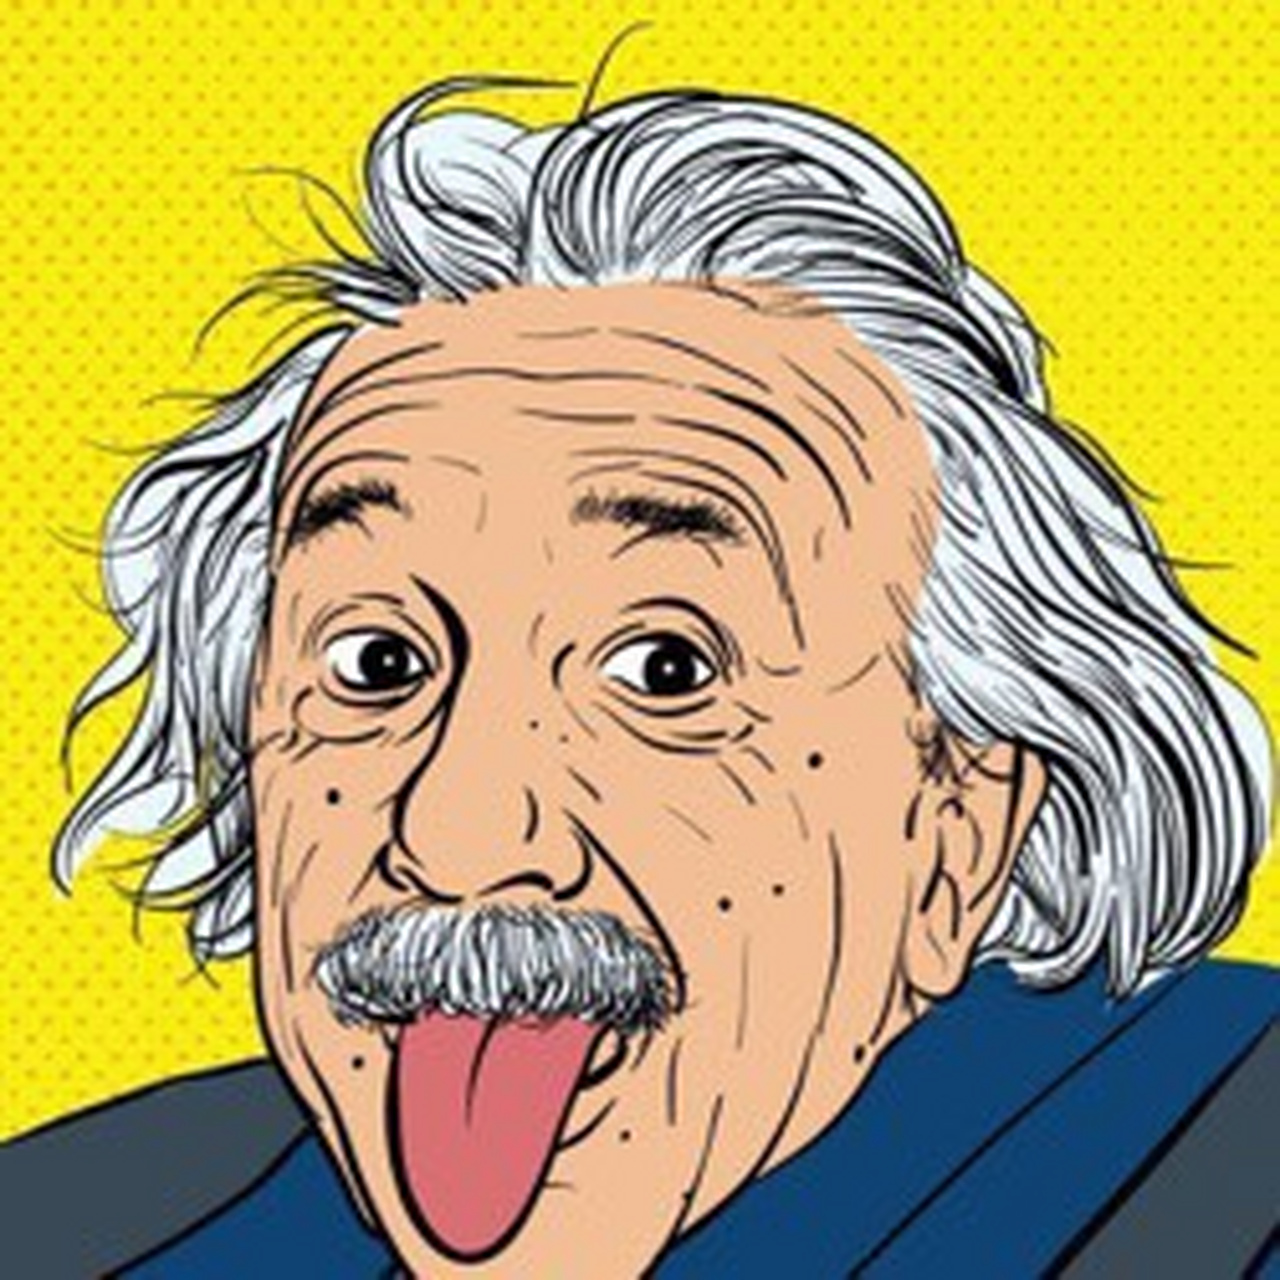 爱因斯坦经典的吐舌头张照片是在1951年3月14日爱因斯坦过72岁生日时